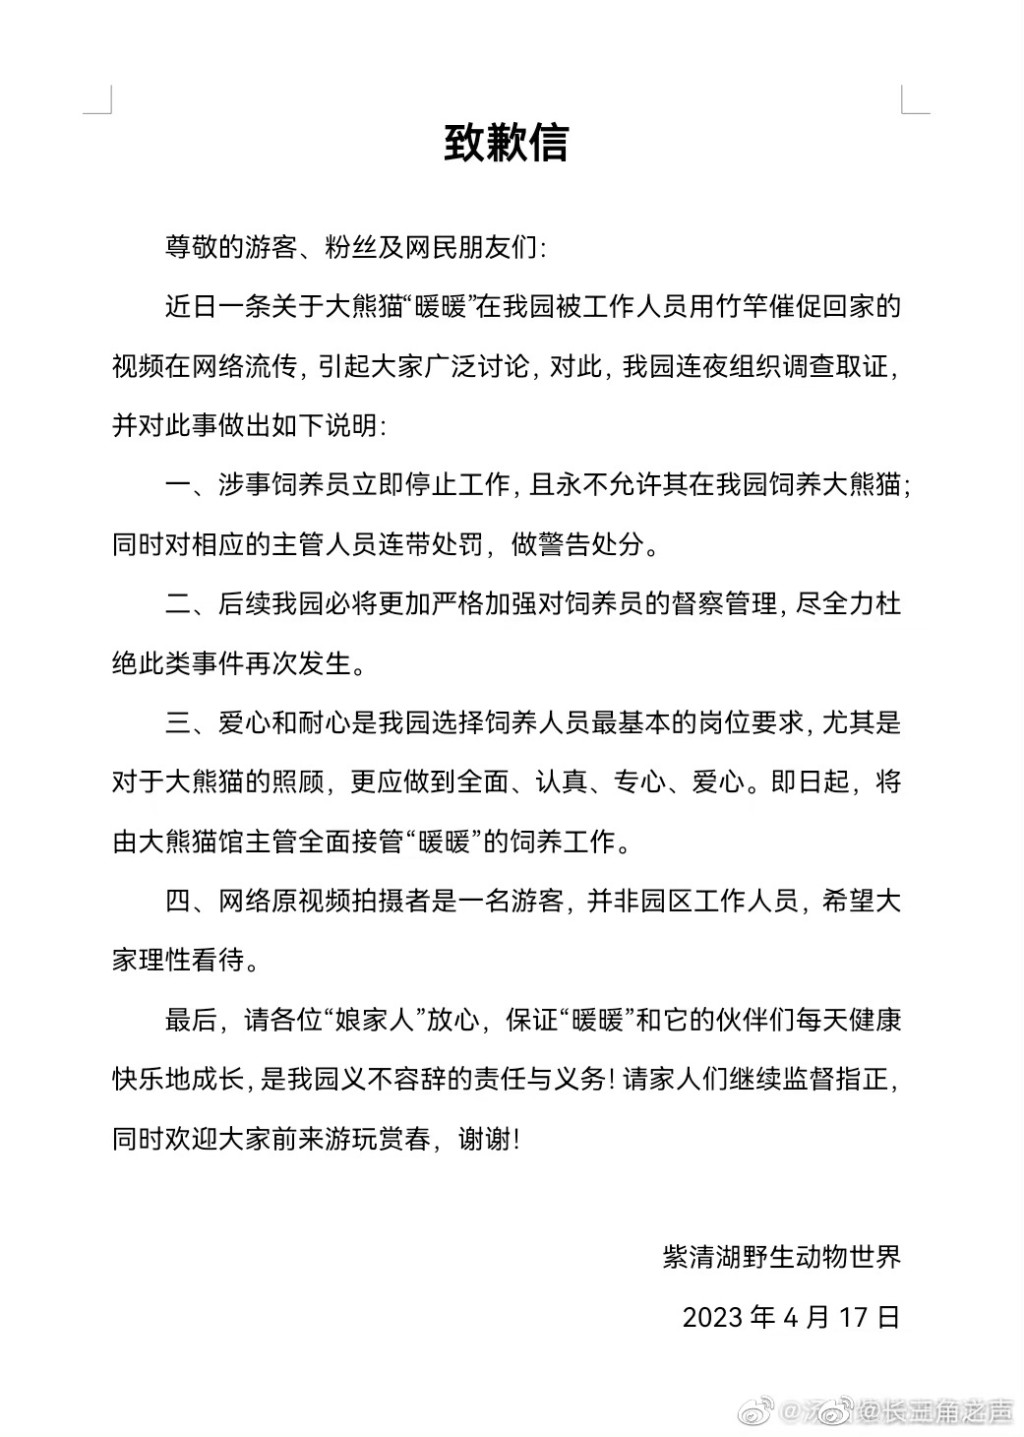 南京紫清湖野生动物世界致歉信。 网图